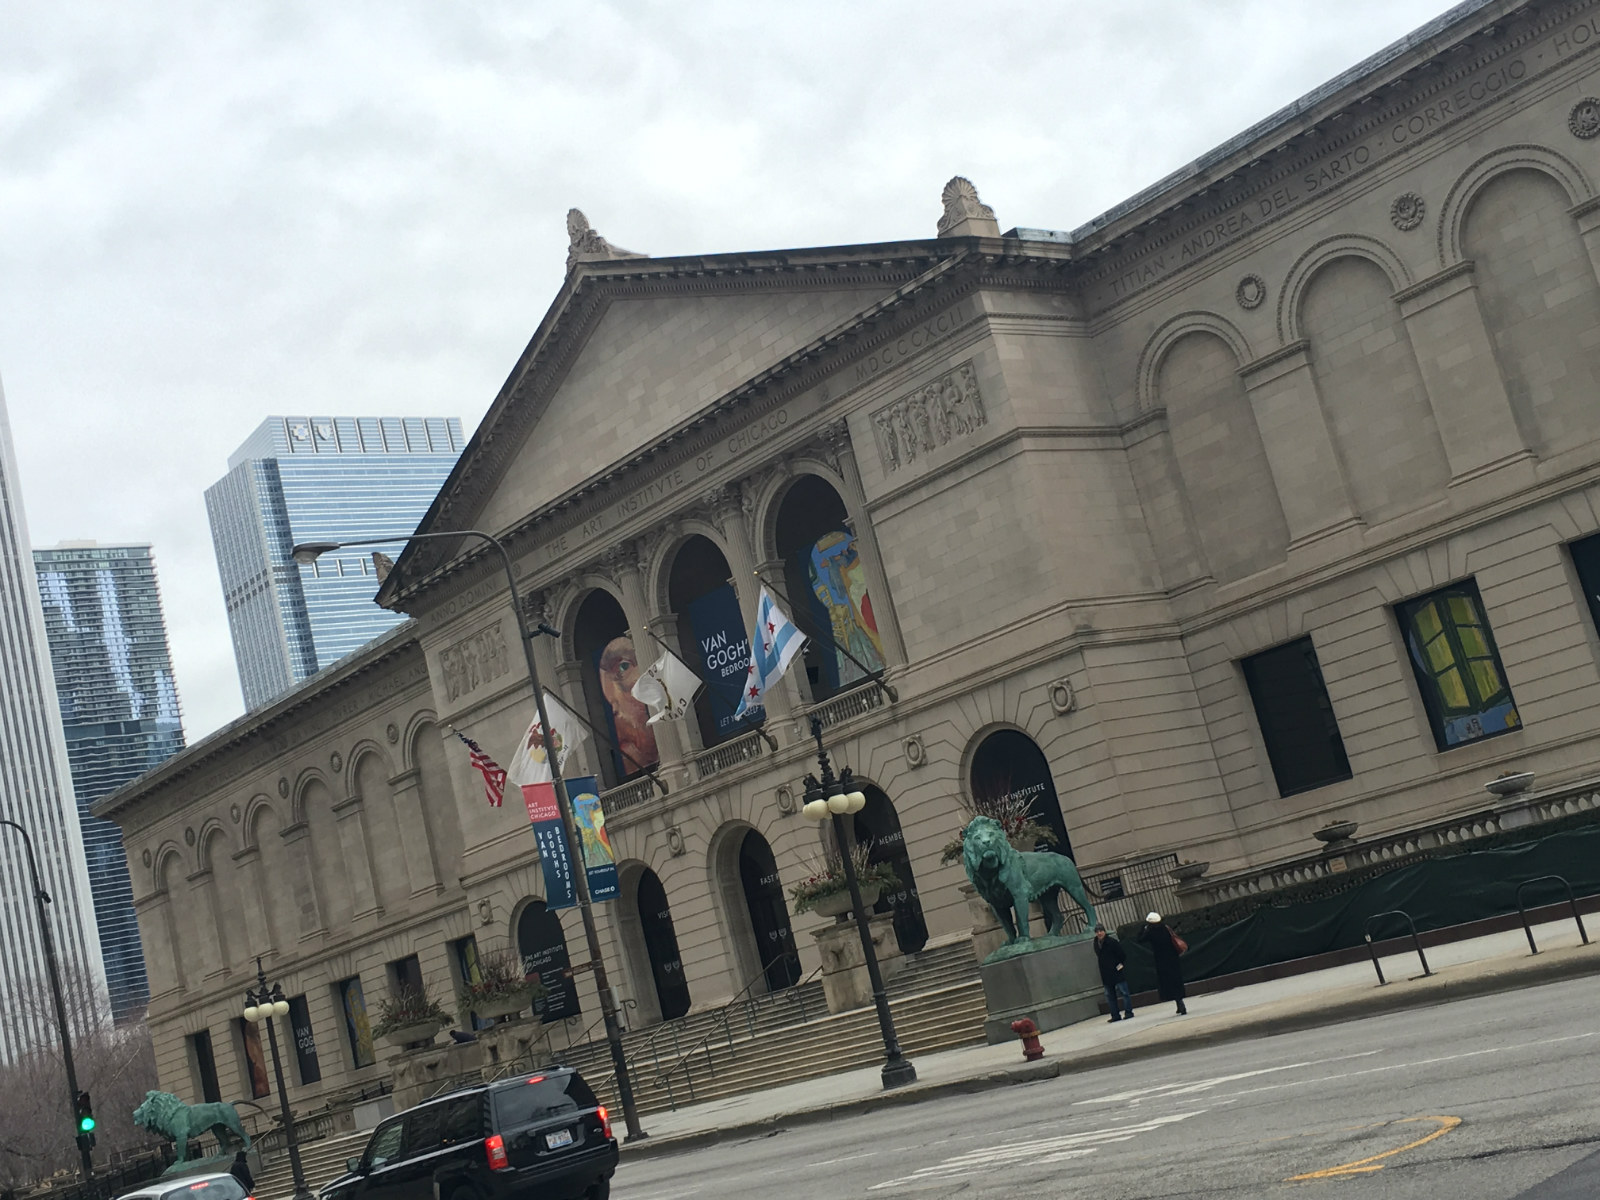 Art Institute of Chicago Museum